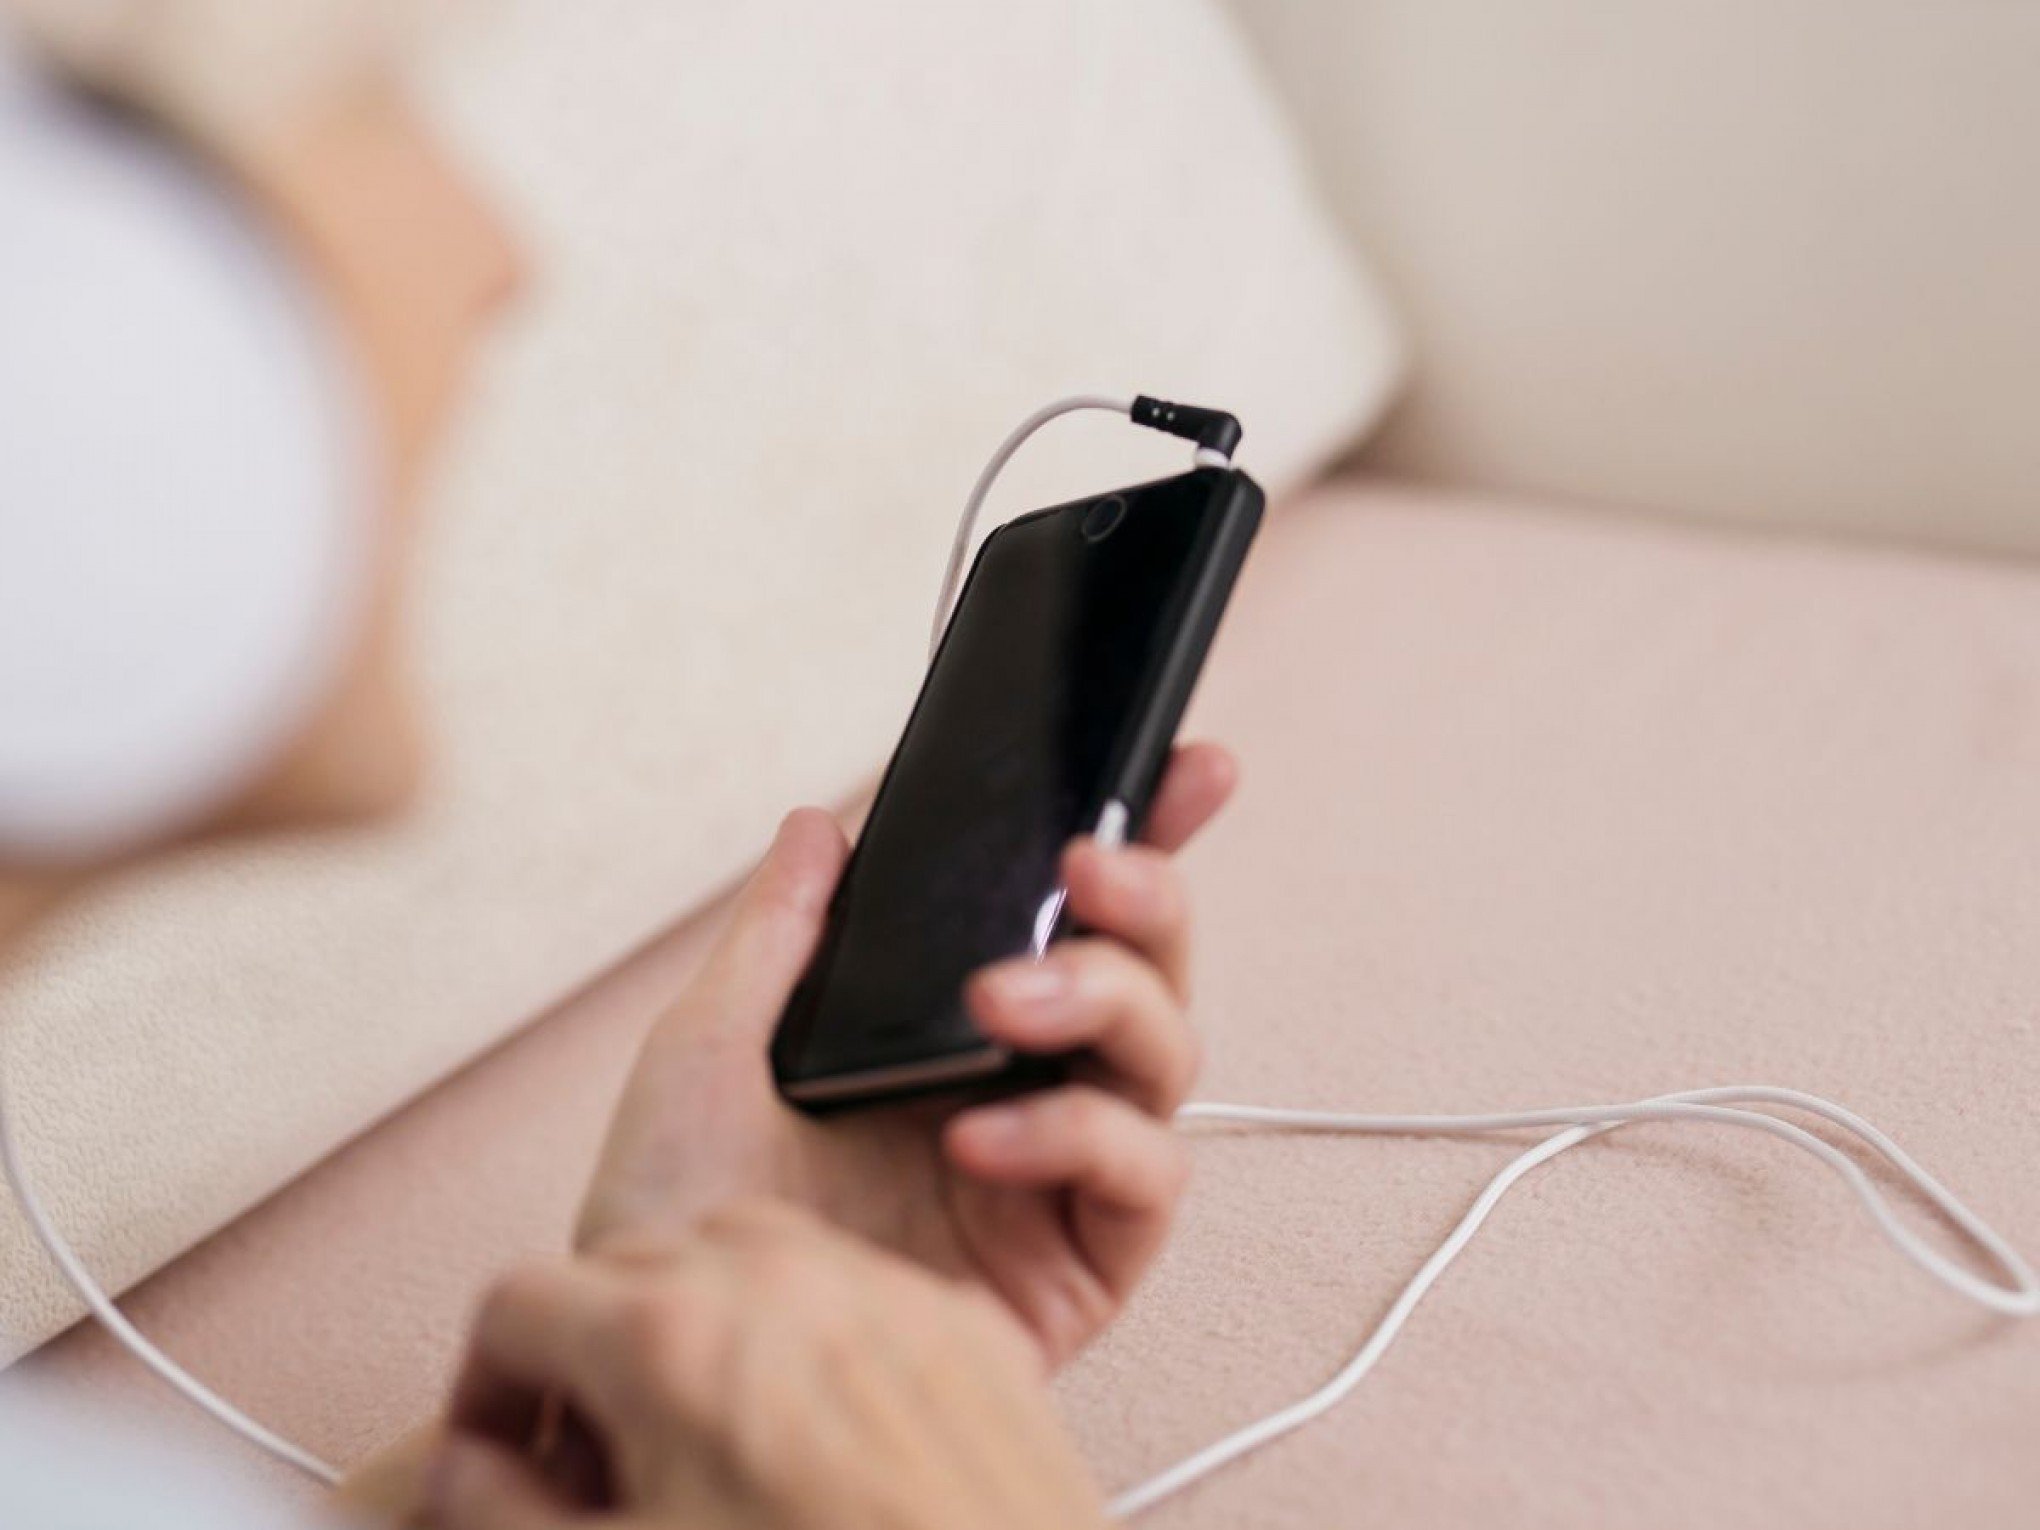 É verdade que dormir ao lado do celular carregando faz mal? Apple responde